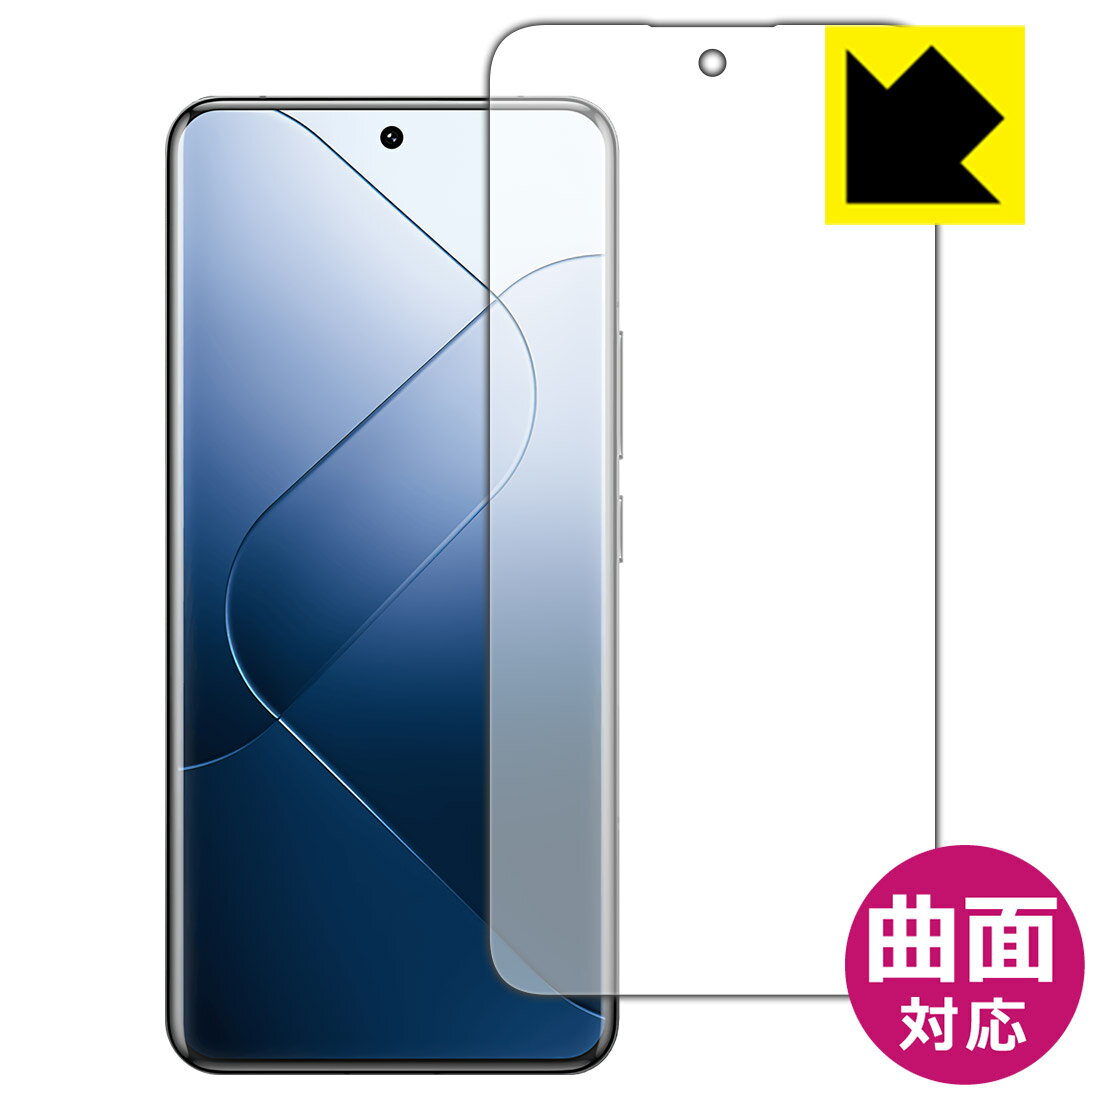 【スーパーSALE 10%OFF】Flexible Shield【光沢】保護フィルム Xiaomi 14 Pro (画面用)【指紋認証対応】 日本製 自社製造直販